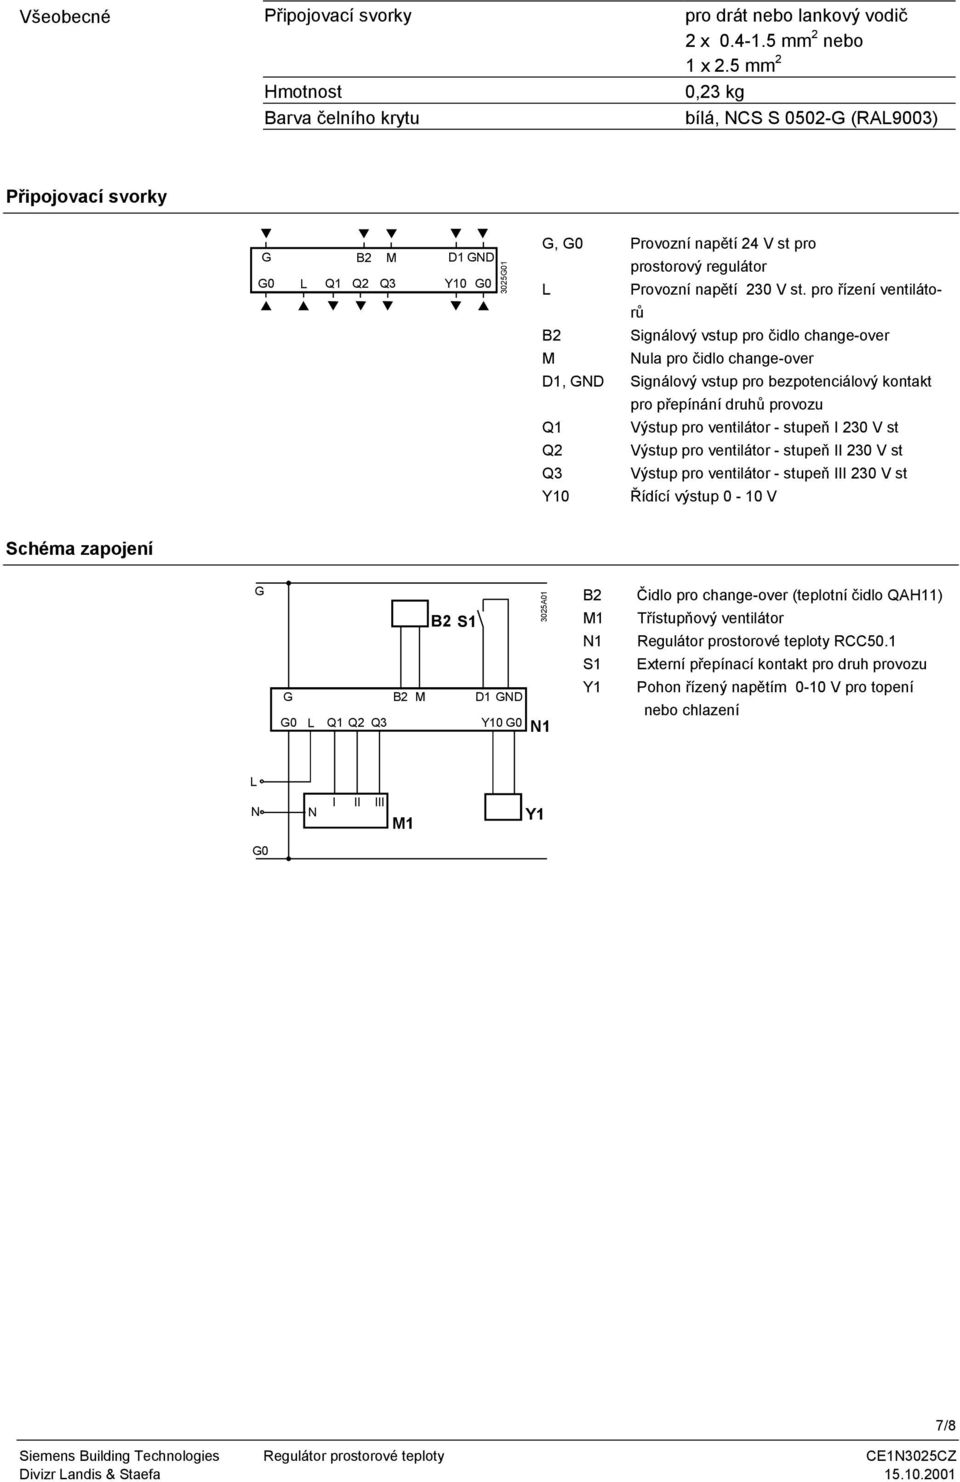 pro řízení ventilátorů B2 Signálový vstup pro čidlo change-over M Nula pro čidlo change-over D1, GND Signálový vstup pro bezpotenciálový kontakt pro přepínání druhů provozu Q1 Výstup pro ventilátor -